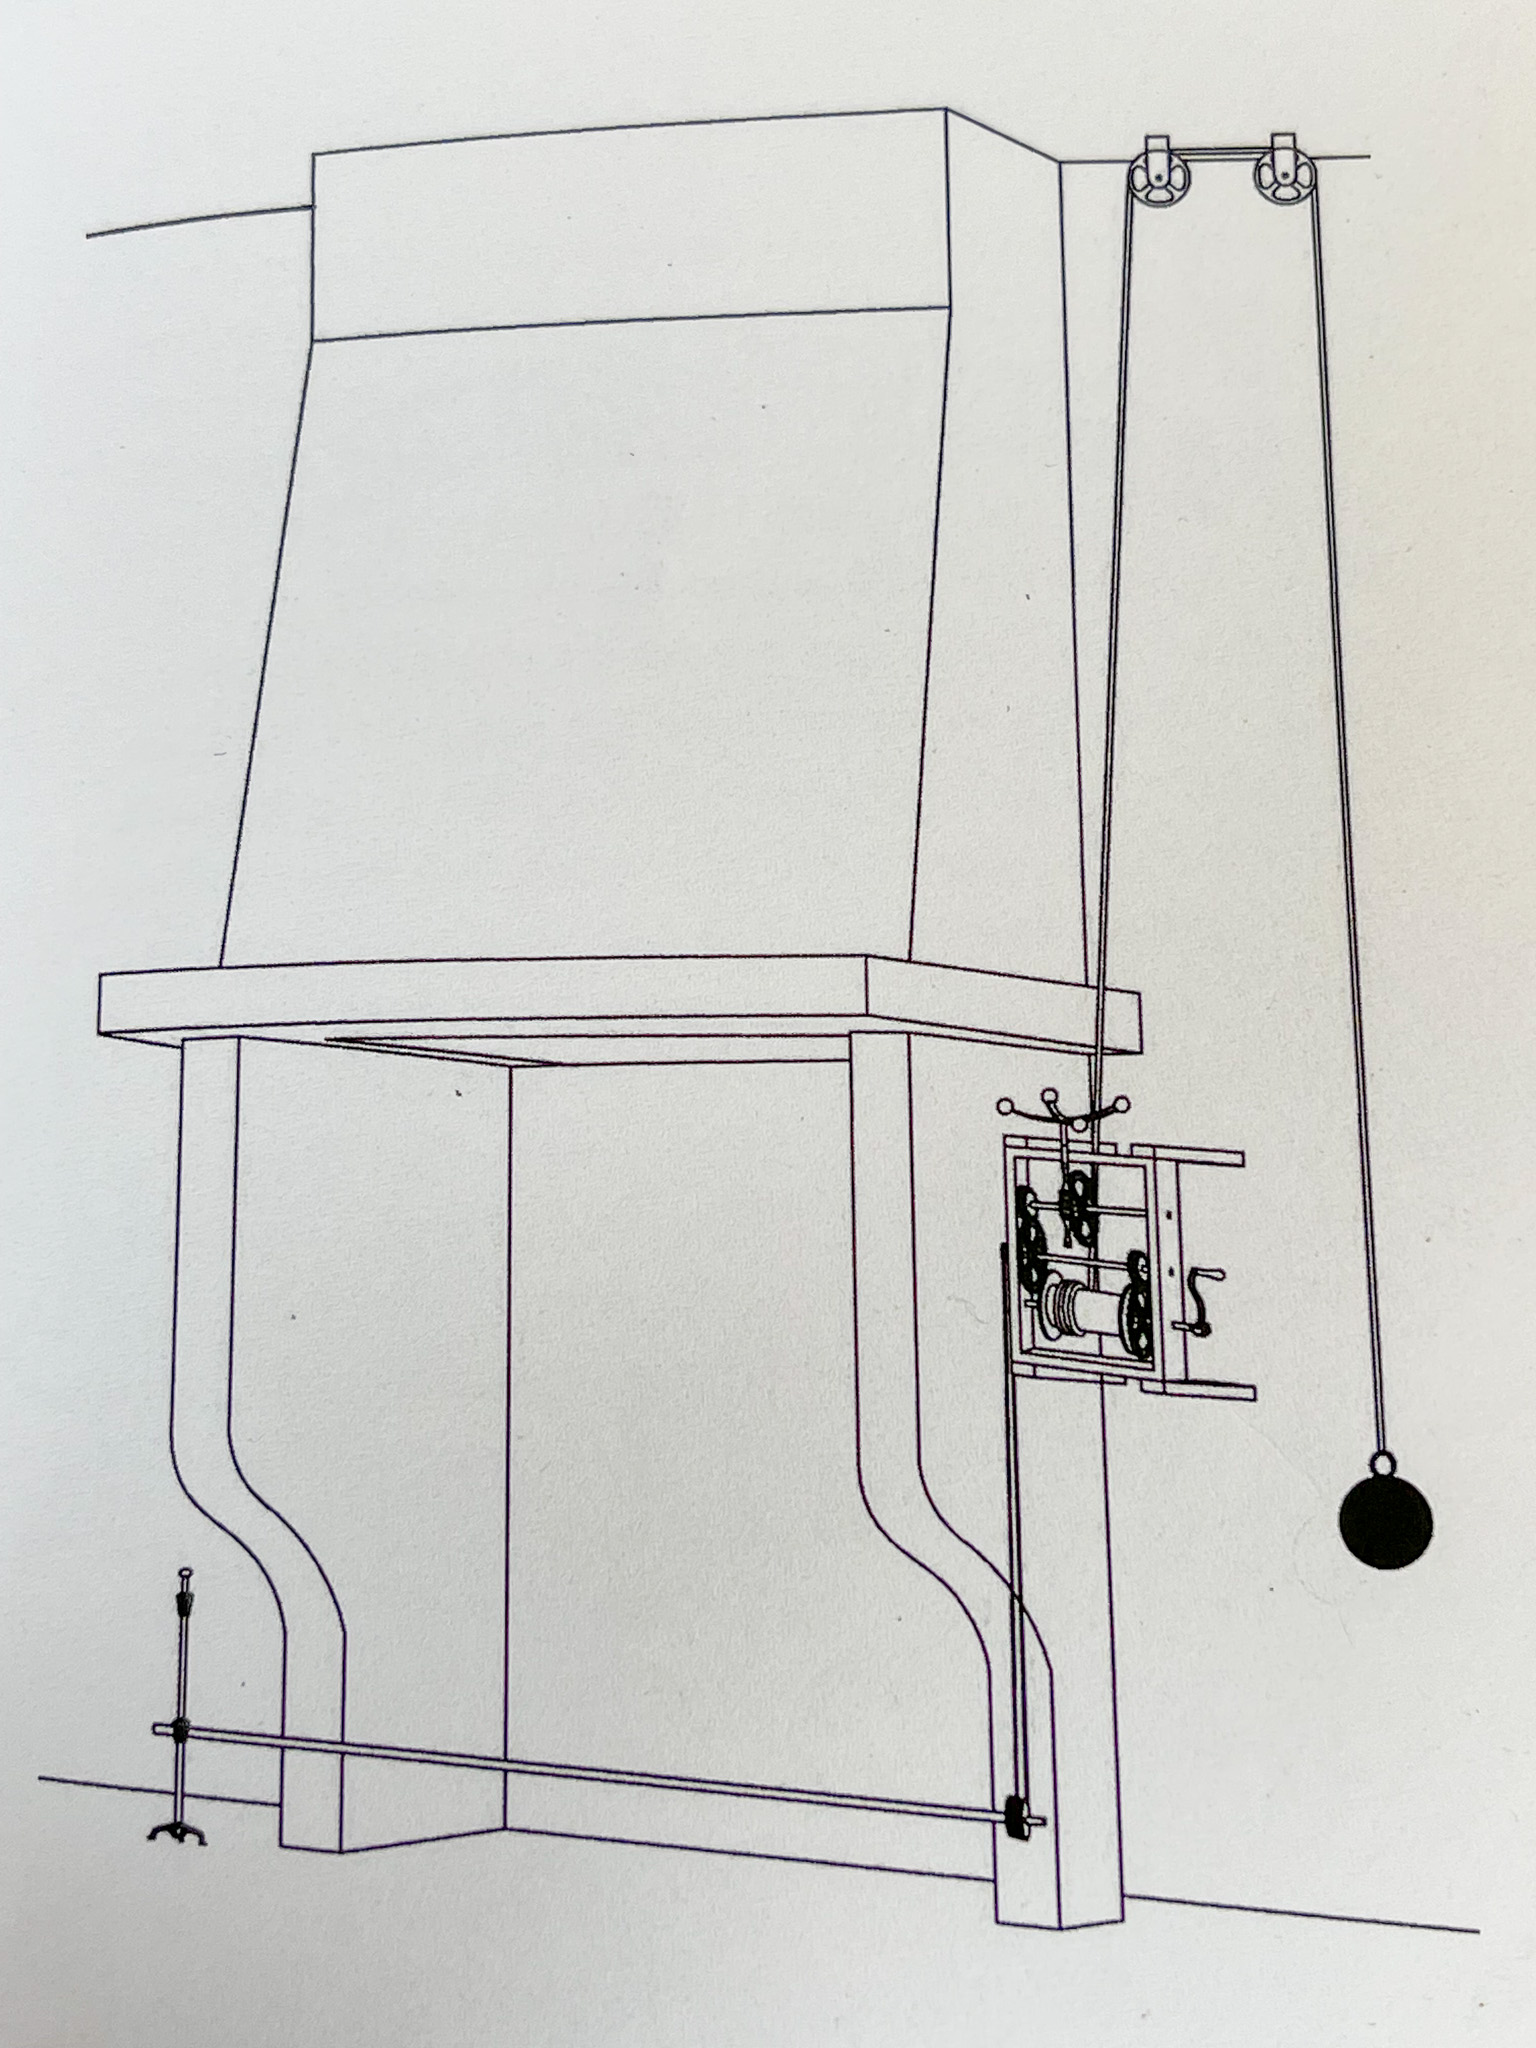 La colocación correcta del asador impulsado por peso. Fuente: La pequeña guía del asador francés, H. Klaassen